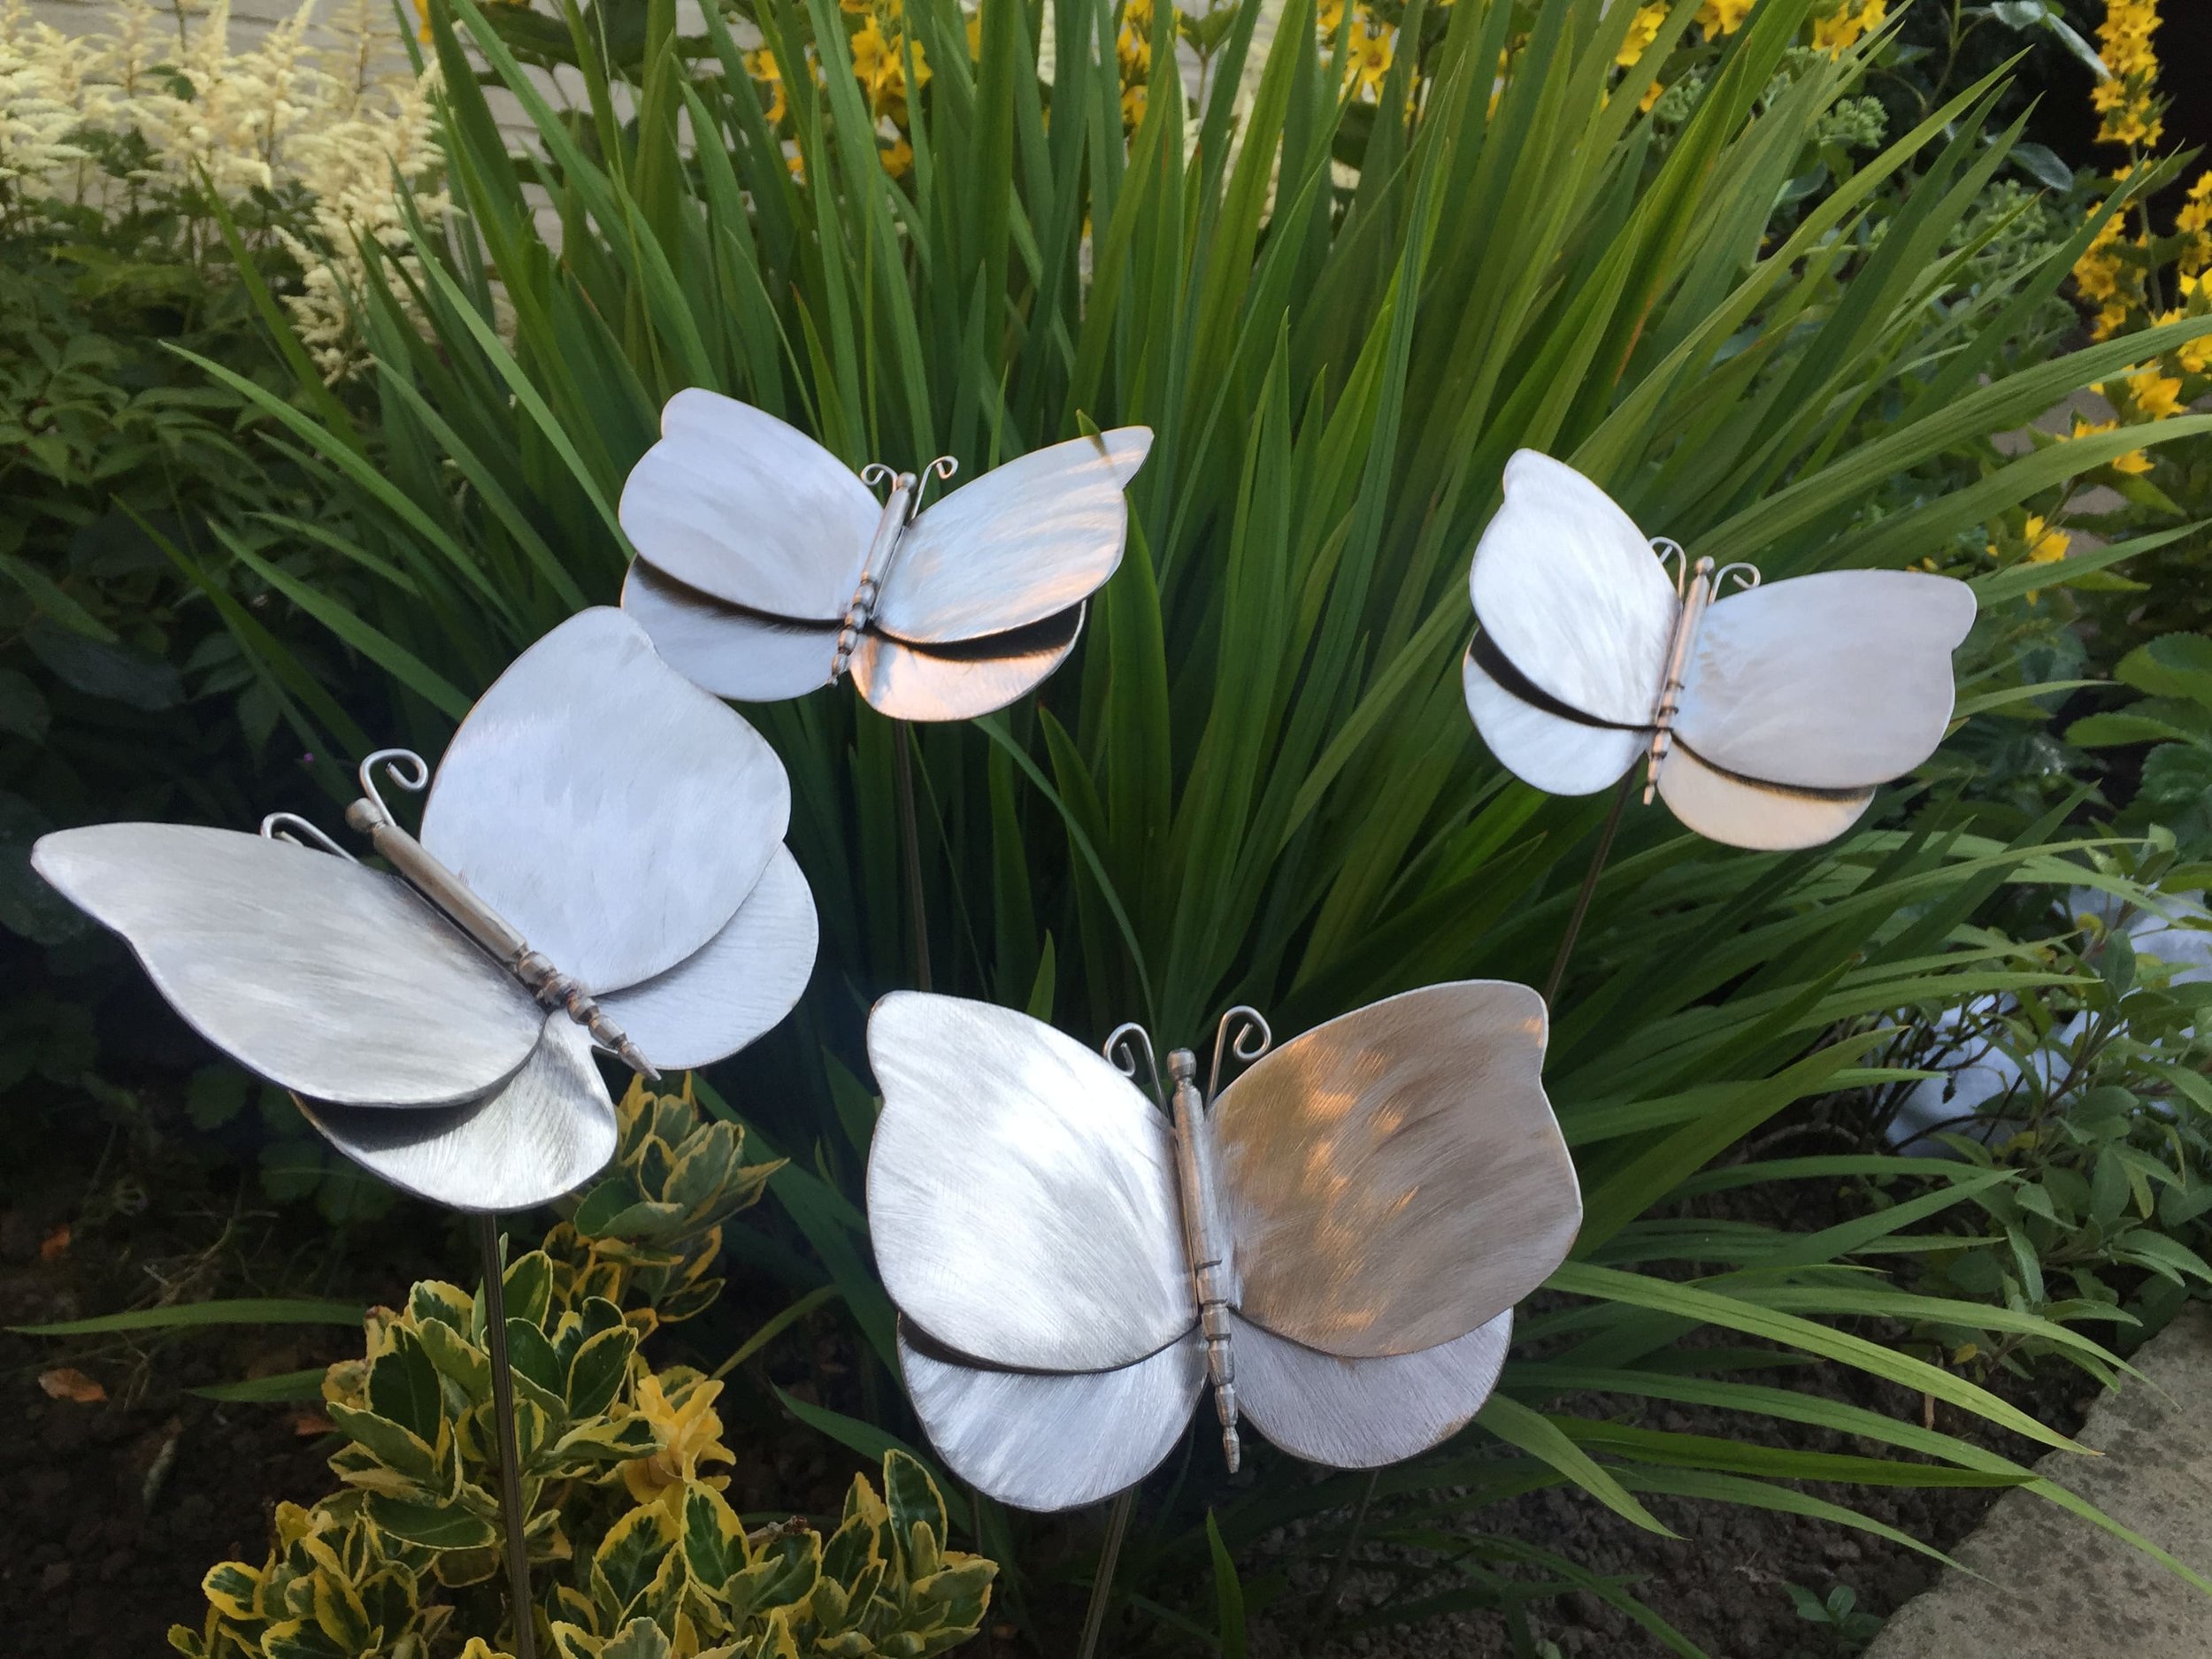 butterflies-stainless-steel-garden-sculpture-3.JPG